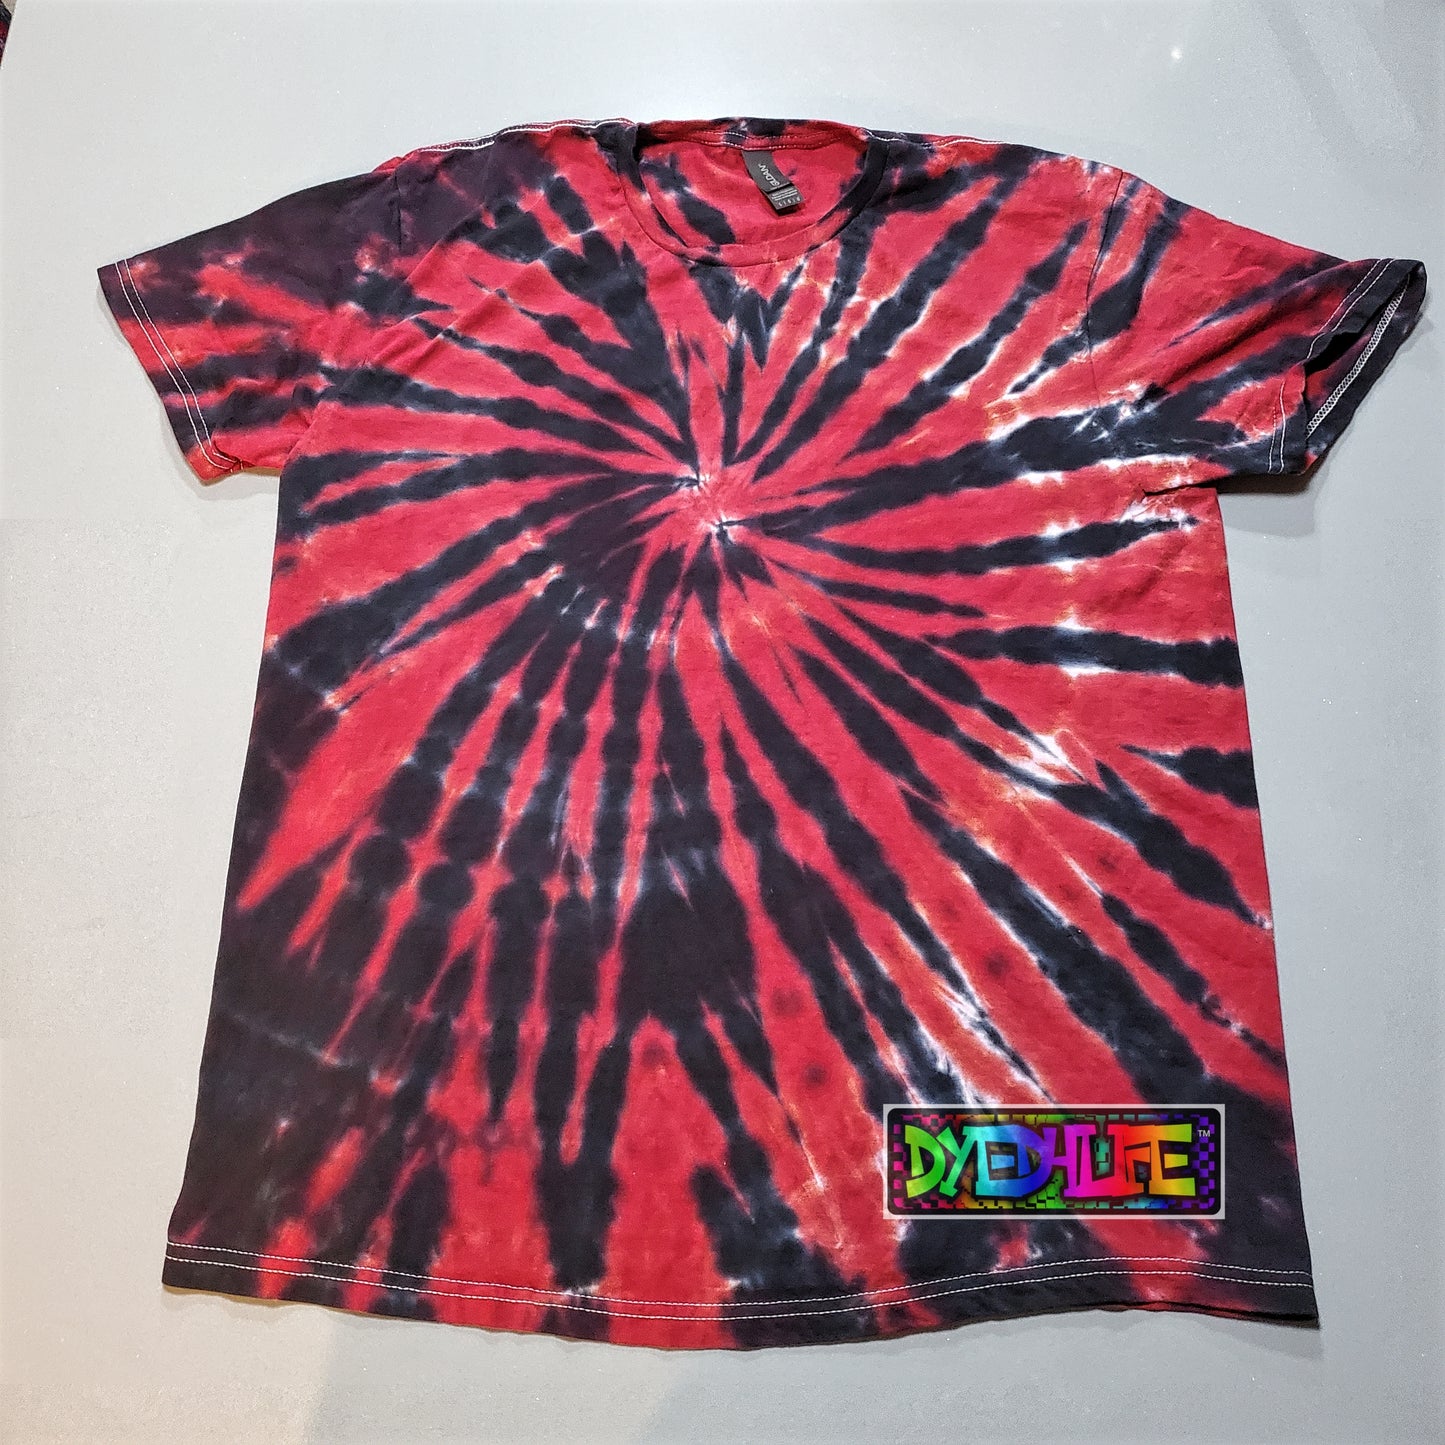 Original Spiral Design Tie Dye T shirt